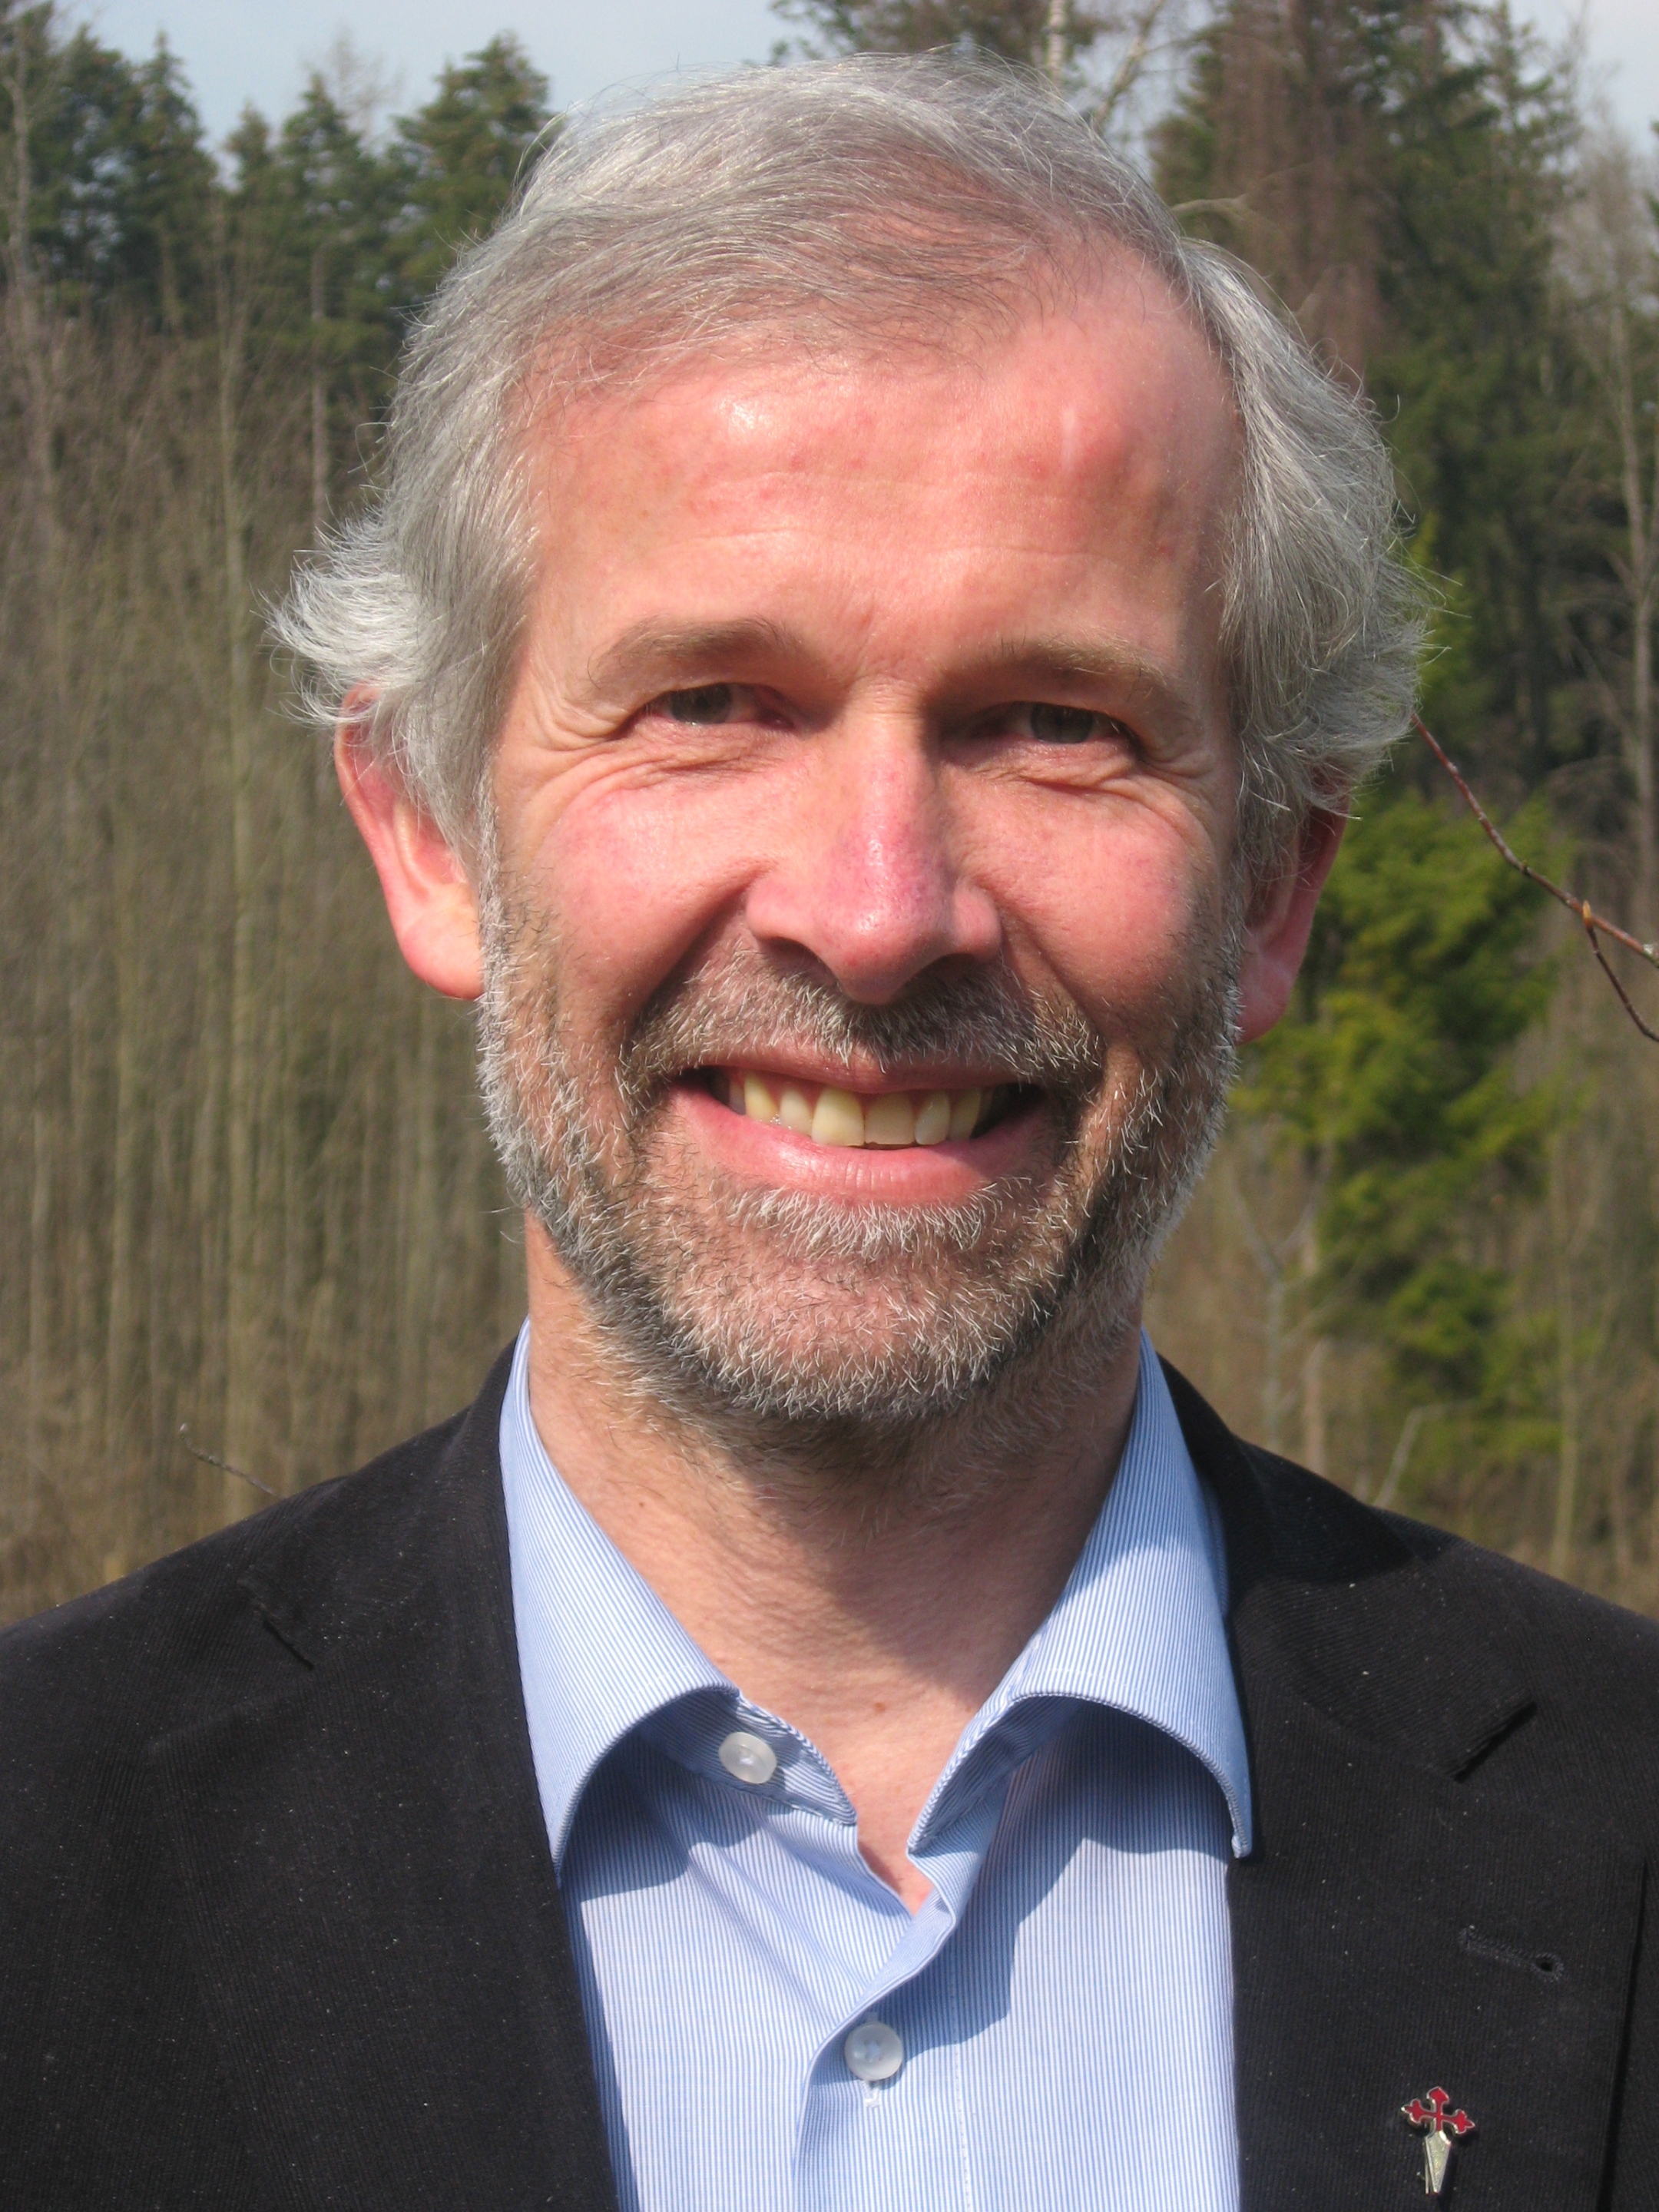 Professor Michael Rosenberger von der katholischen Privatuniversität Linz hatte 2009 mit einigen Kollegen einen Ethikkodex für Seelsorgerinnen und Seelsorger publiziert.